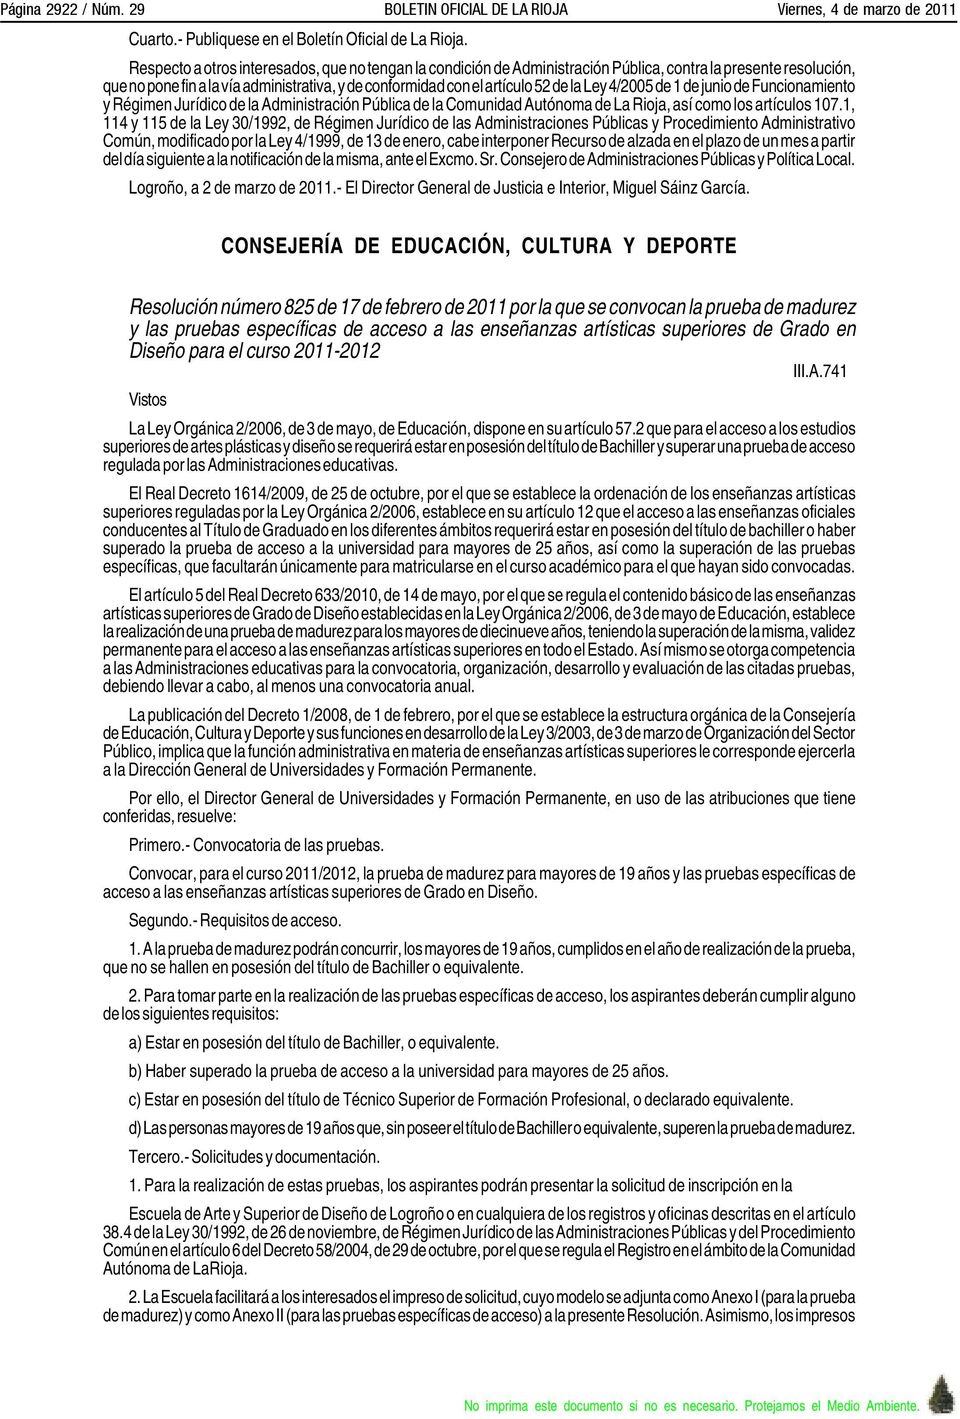 Ley 4/2005 de 1 de junio de Funcionamiento y Régimen Jurídico de la Administración Pública de la Comunidad Autónoma de La Rioja, así como los artículos 107.